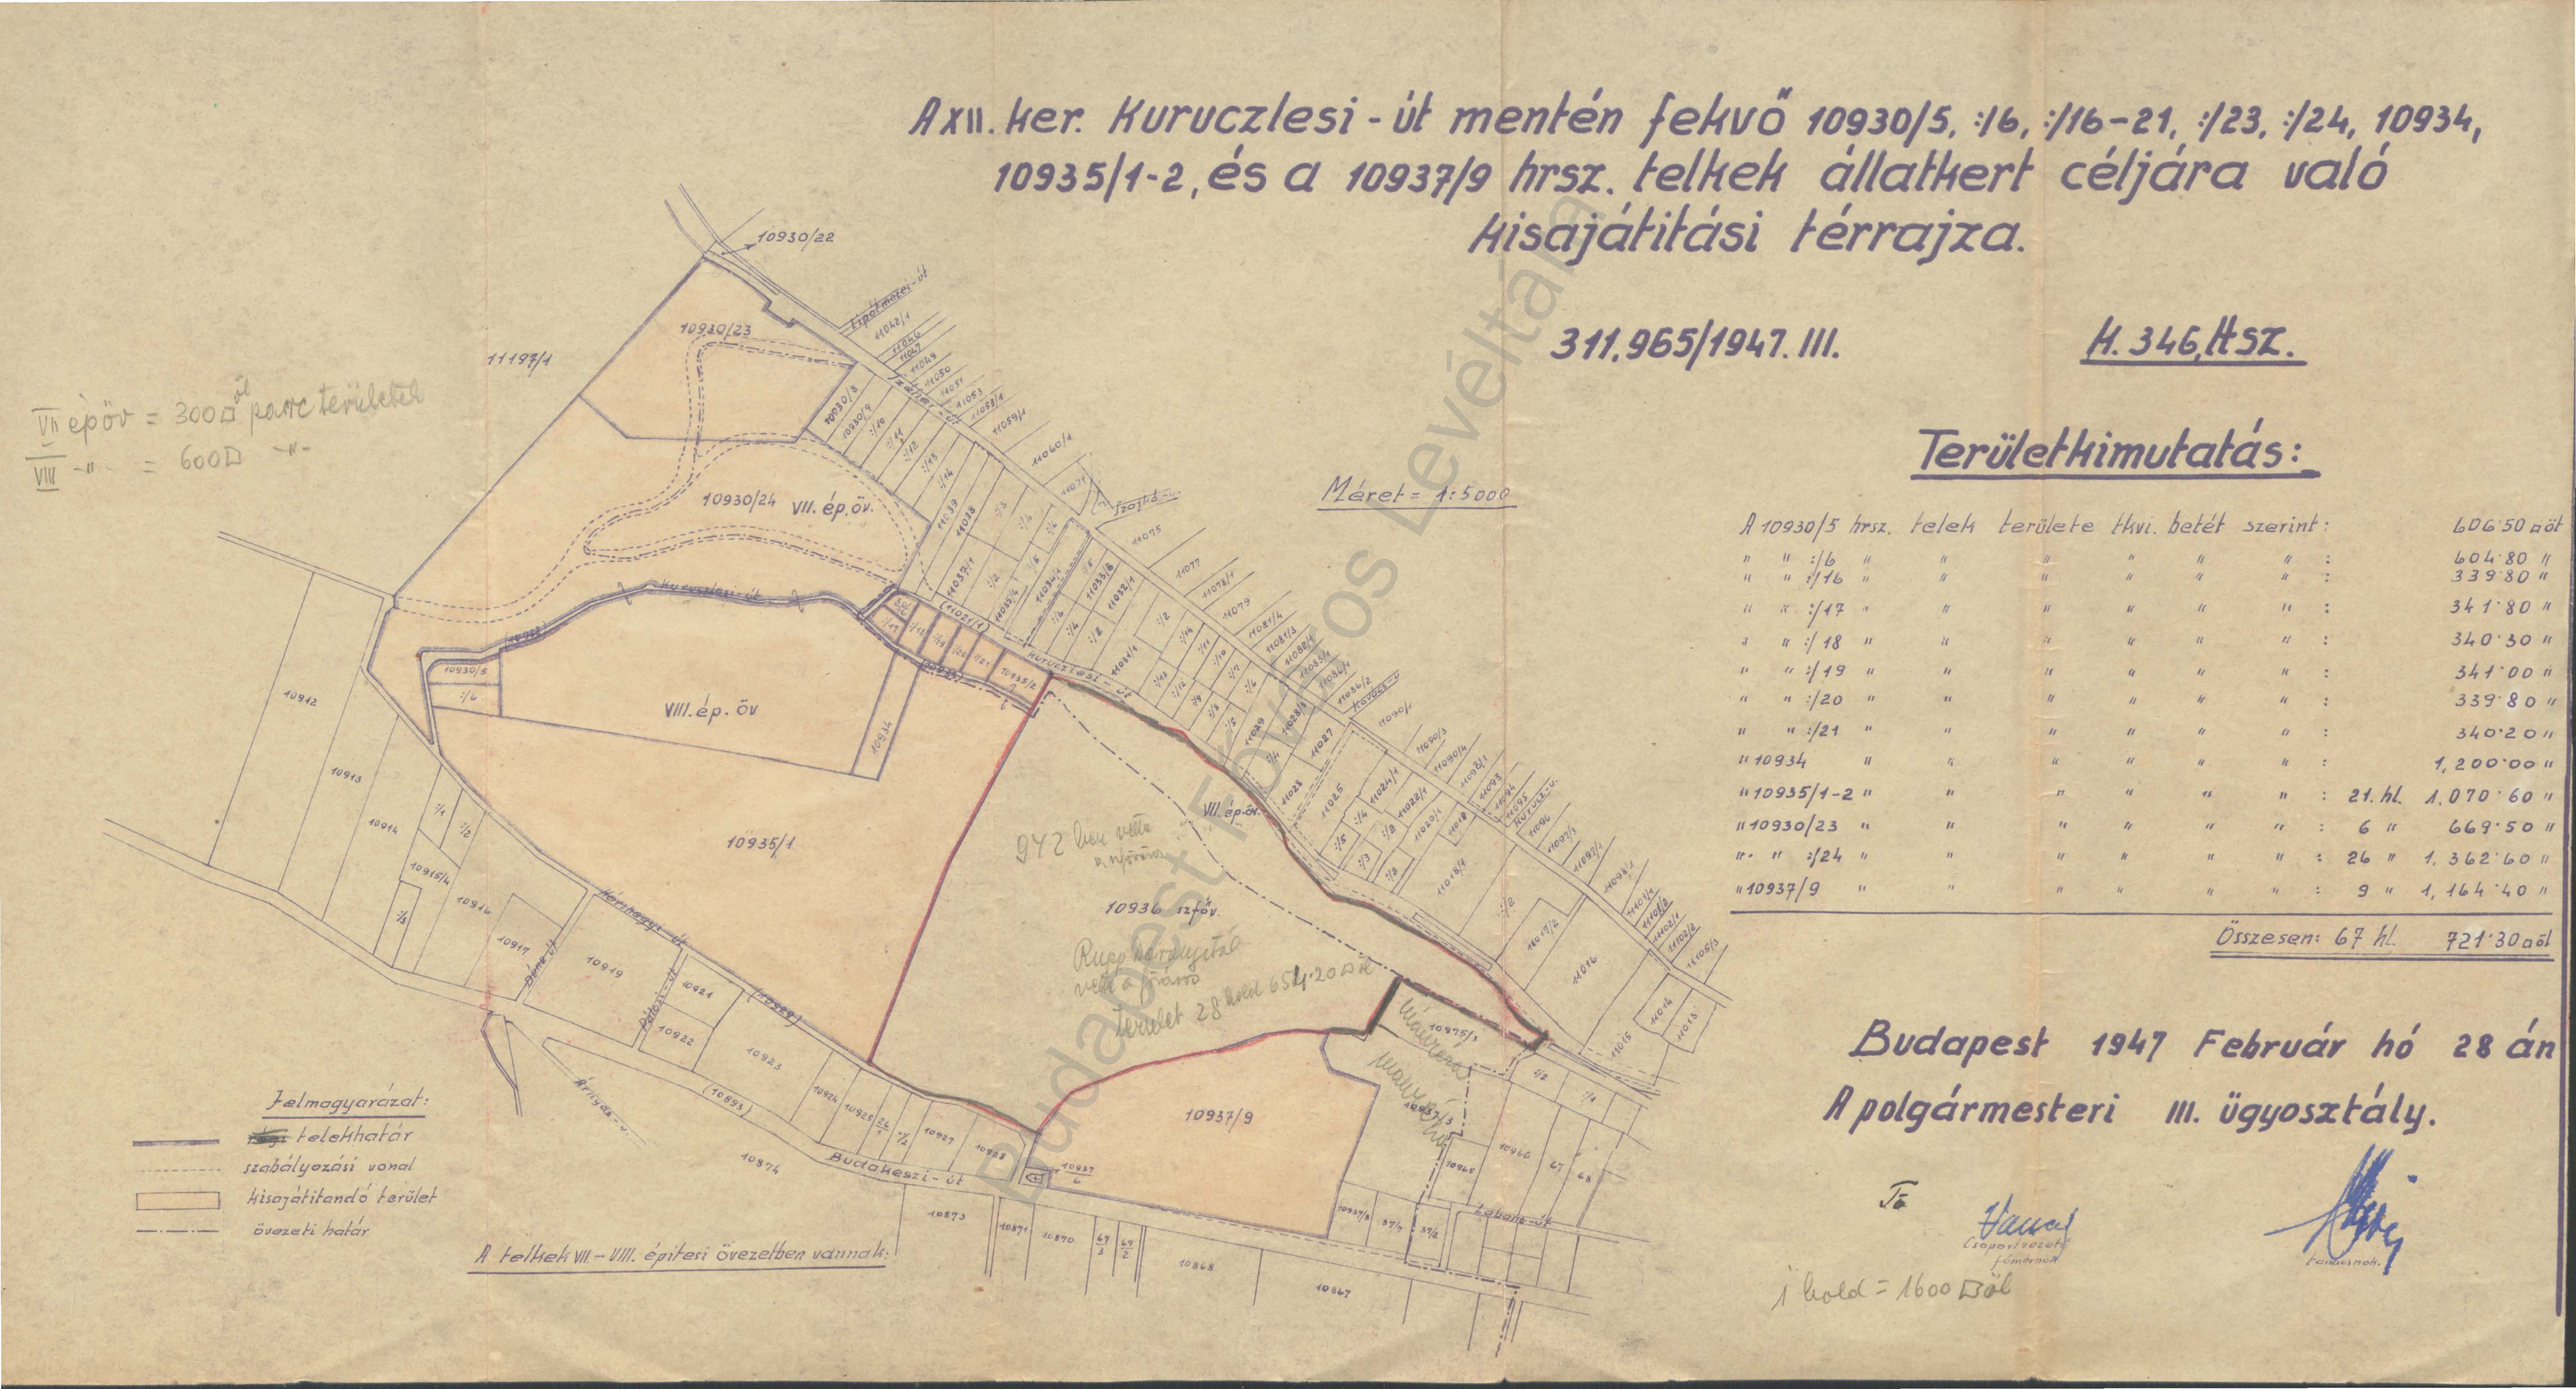 3. kép. Az új állatkert helyének szánt terület részletes térrajza 1947-ben (HU BFL IV.1409.c XI. 1256/1945)